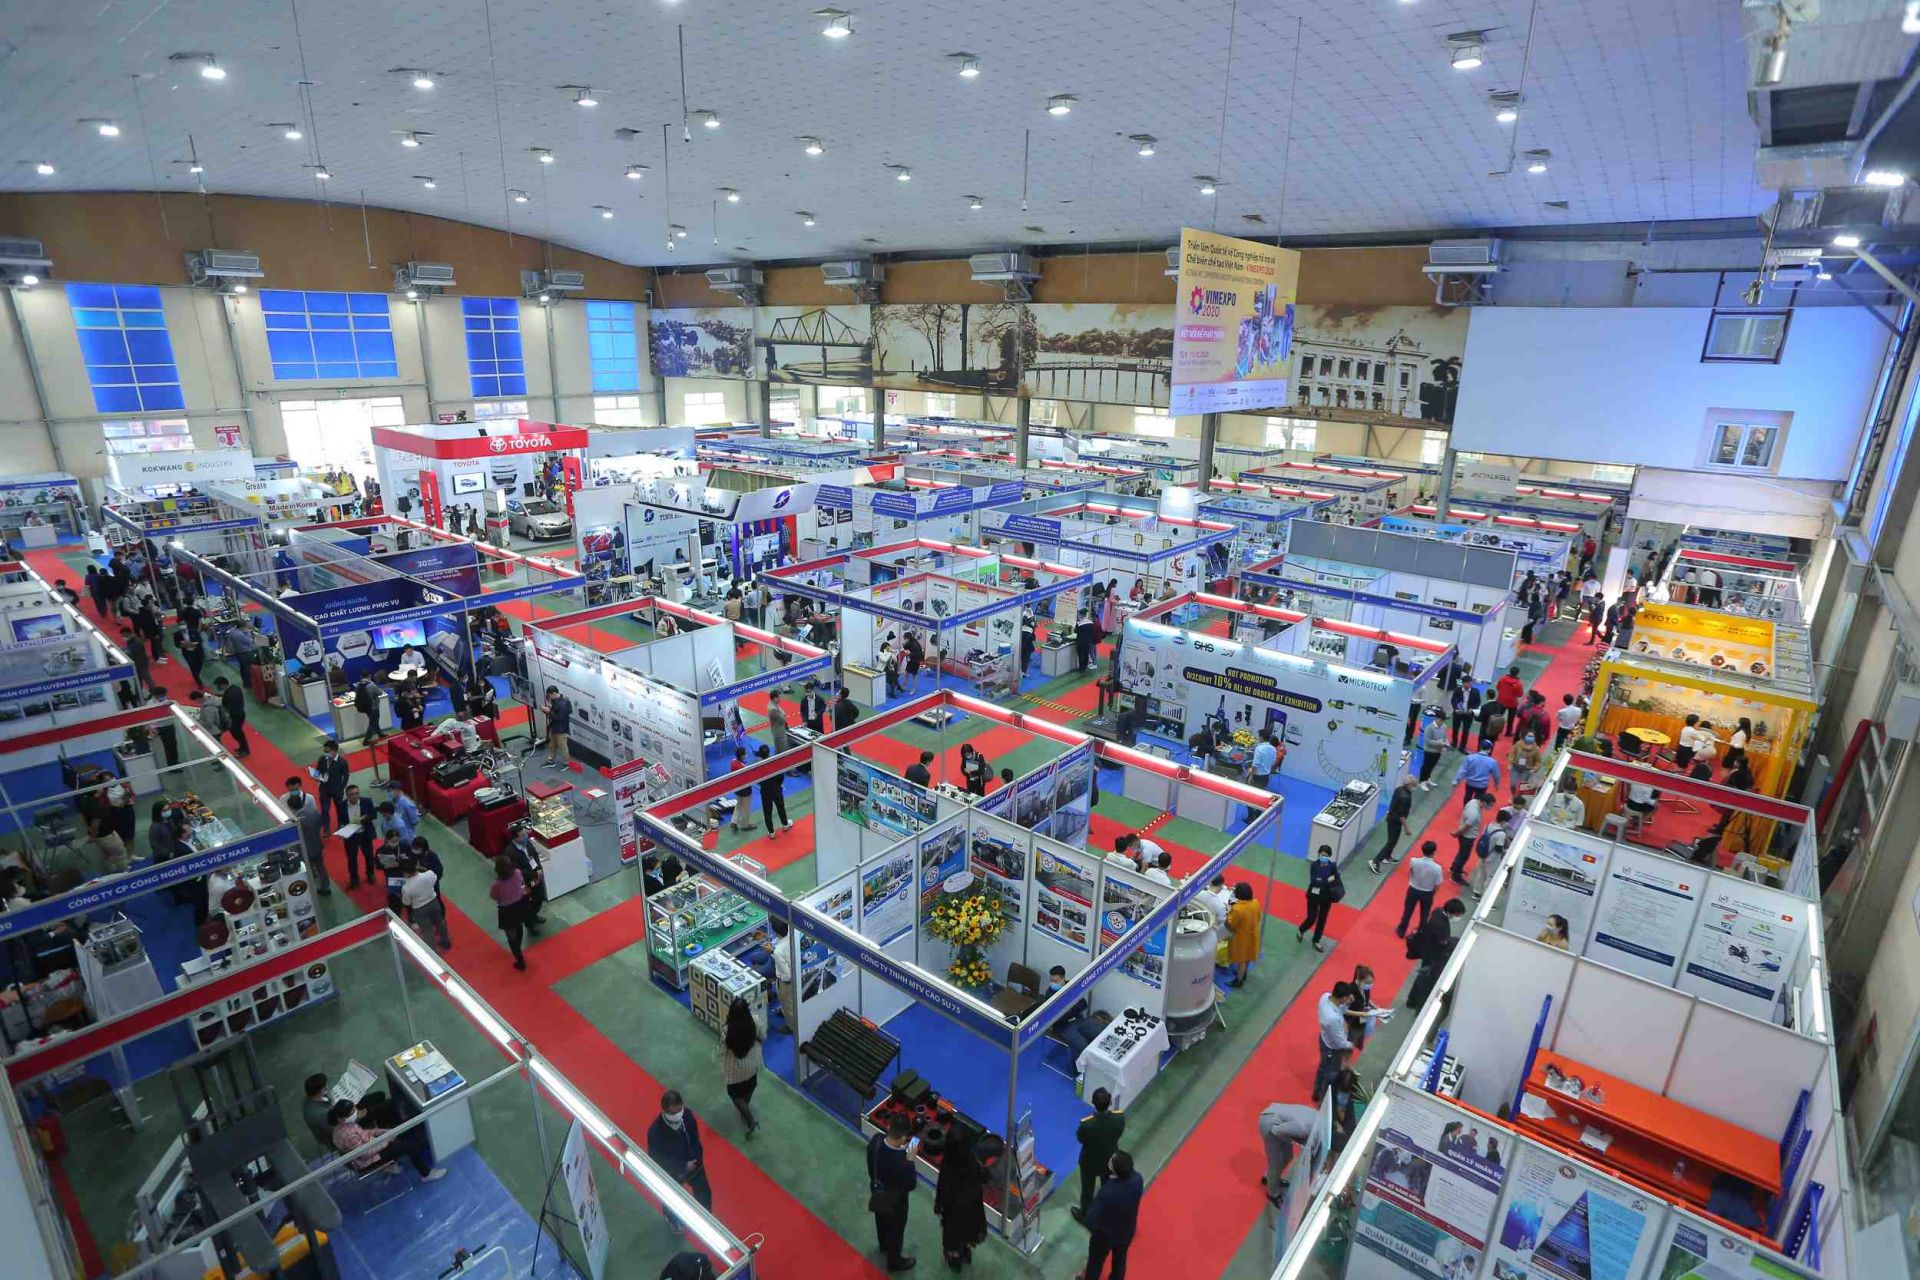 Triển lãm quốc tế lần thứ 2 về công nghiệp hỗ trợ và chế biến chế tạo Việt Nam - VIMEXPO 2020